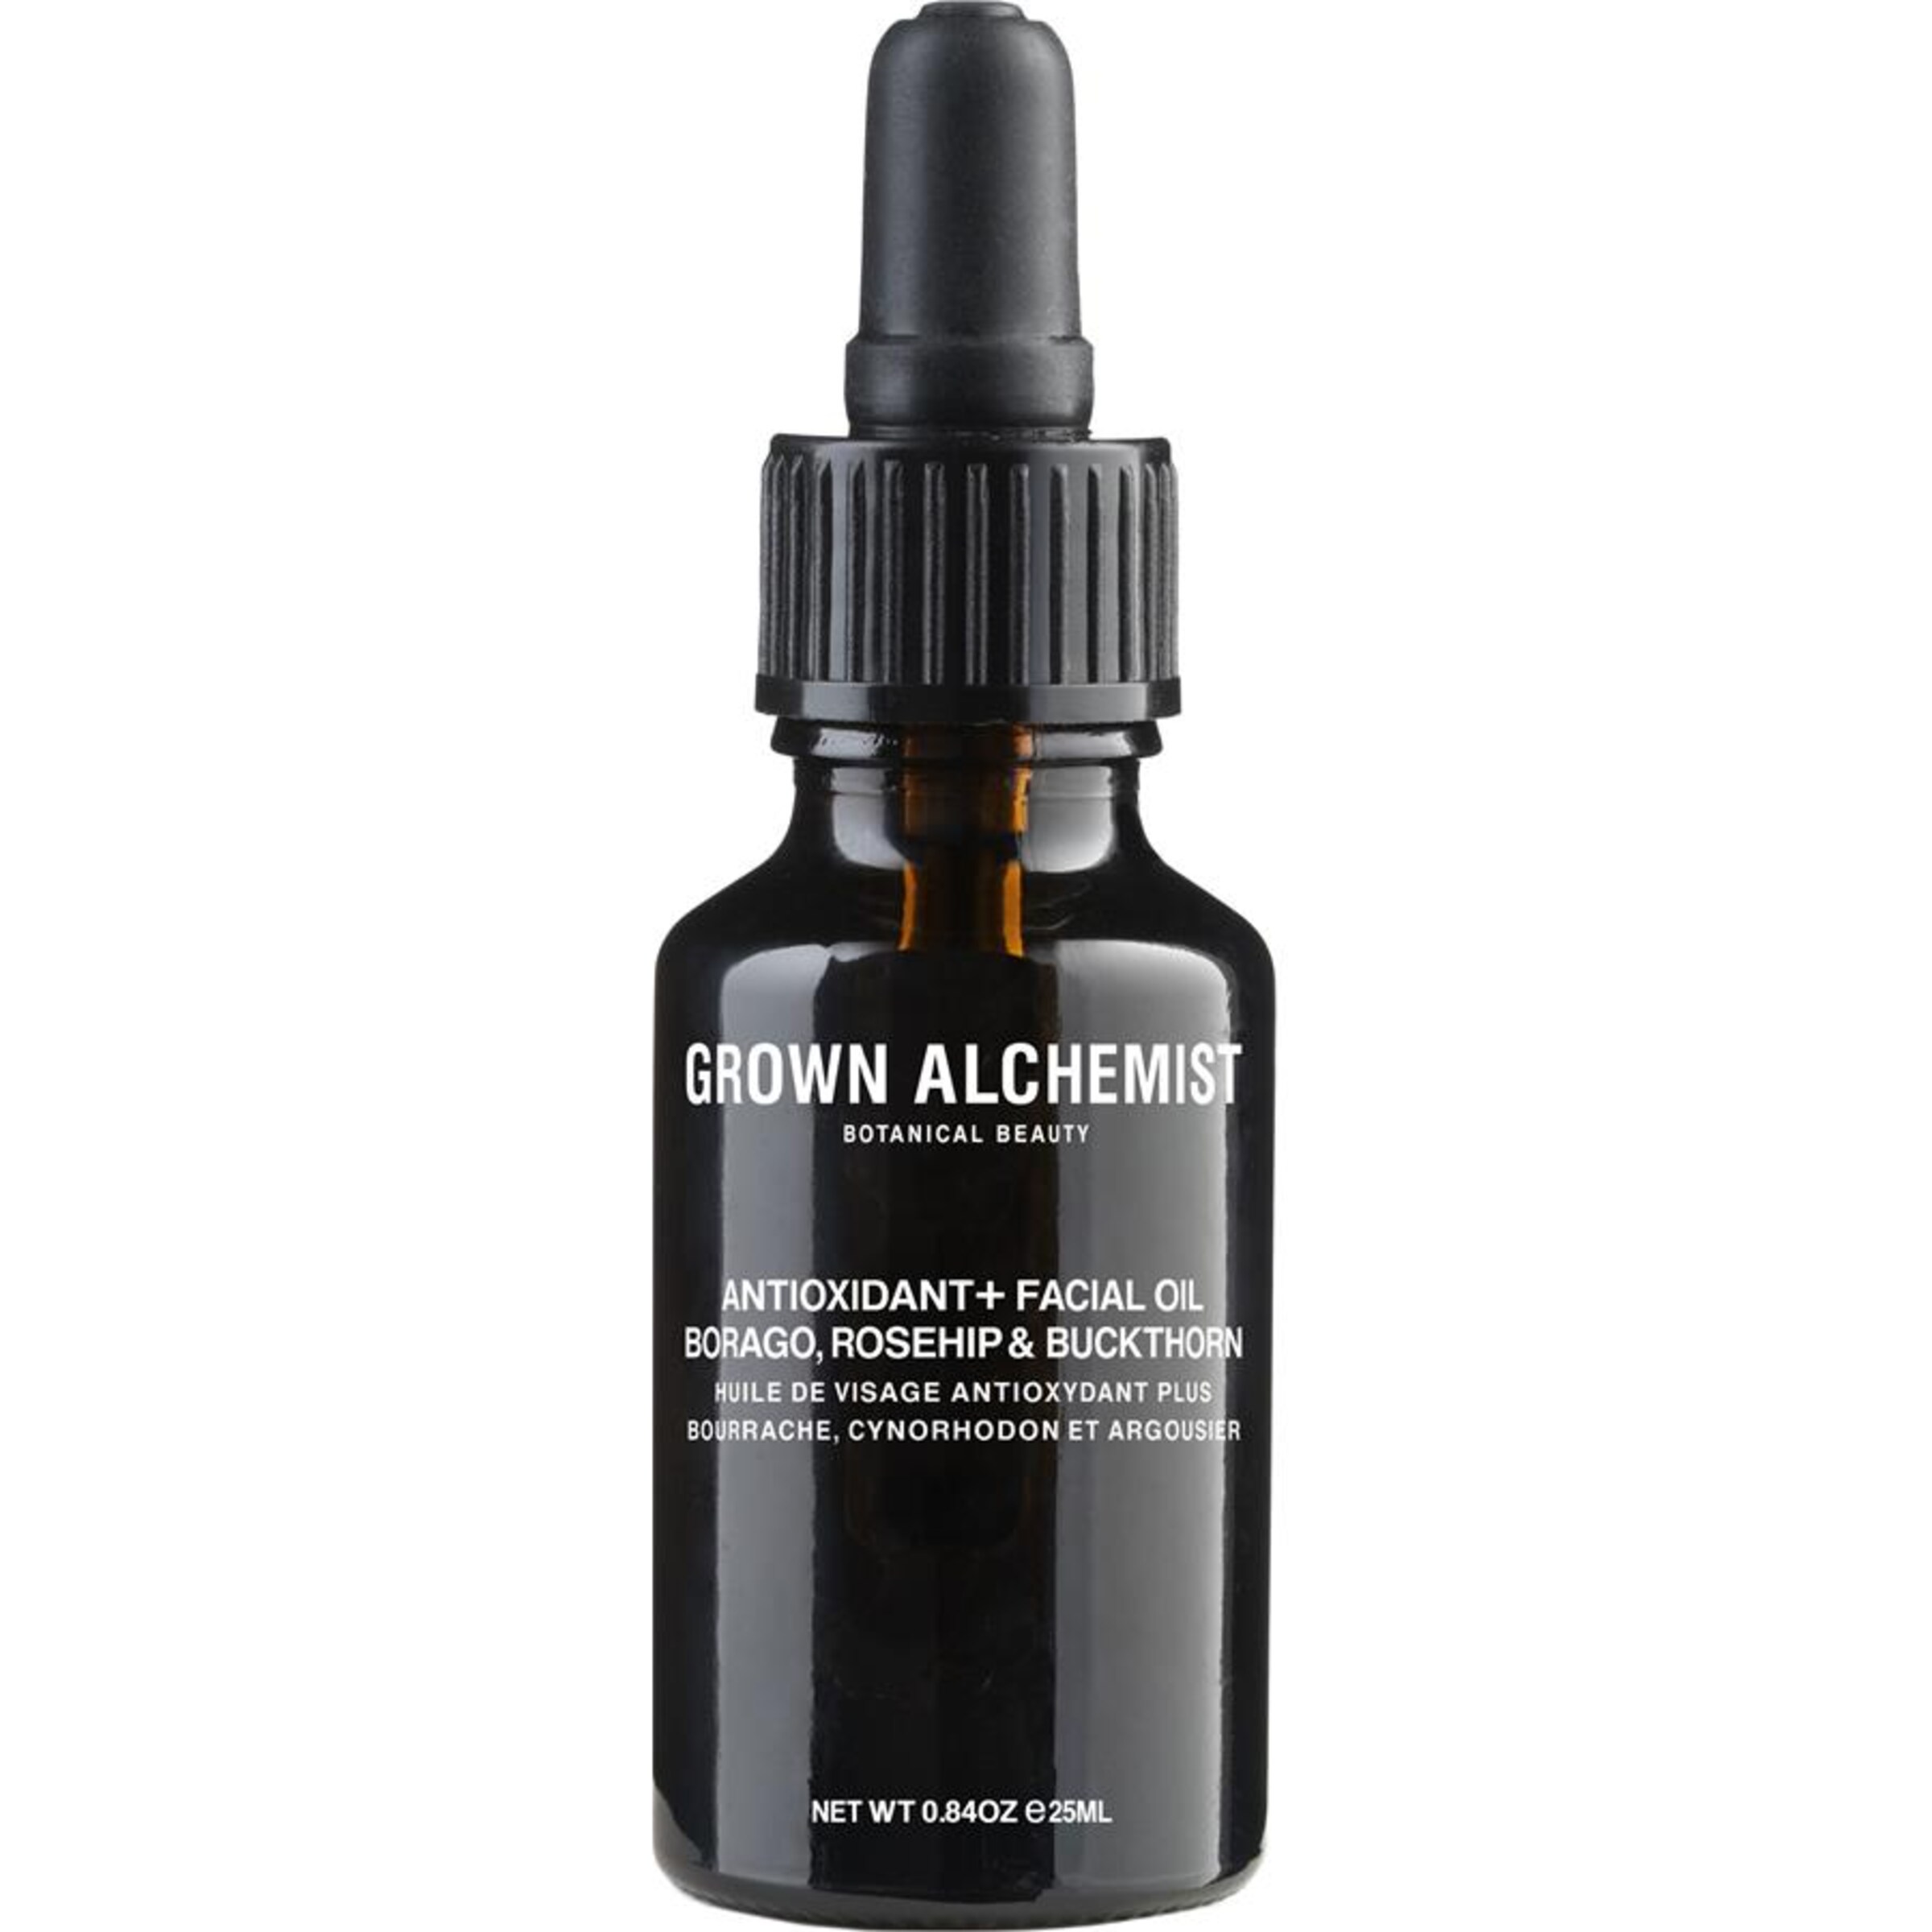 Grown Alchemist Antioxidant+ Facial Oil in 